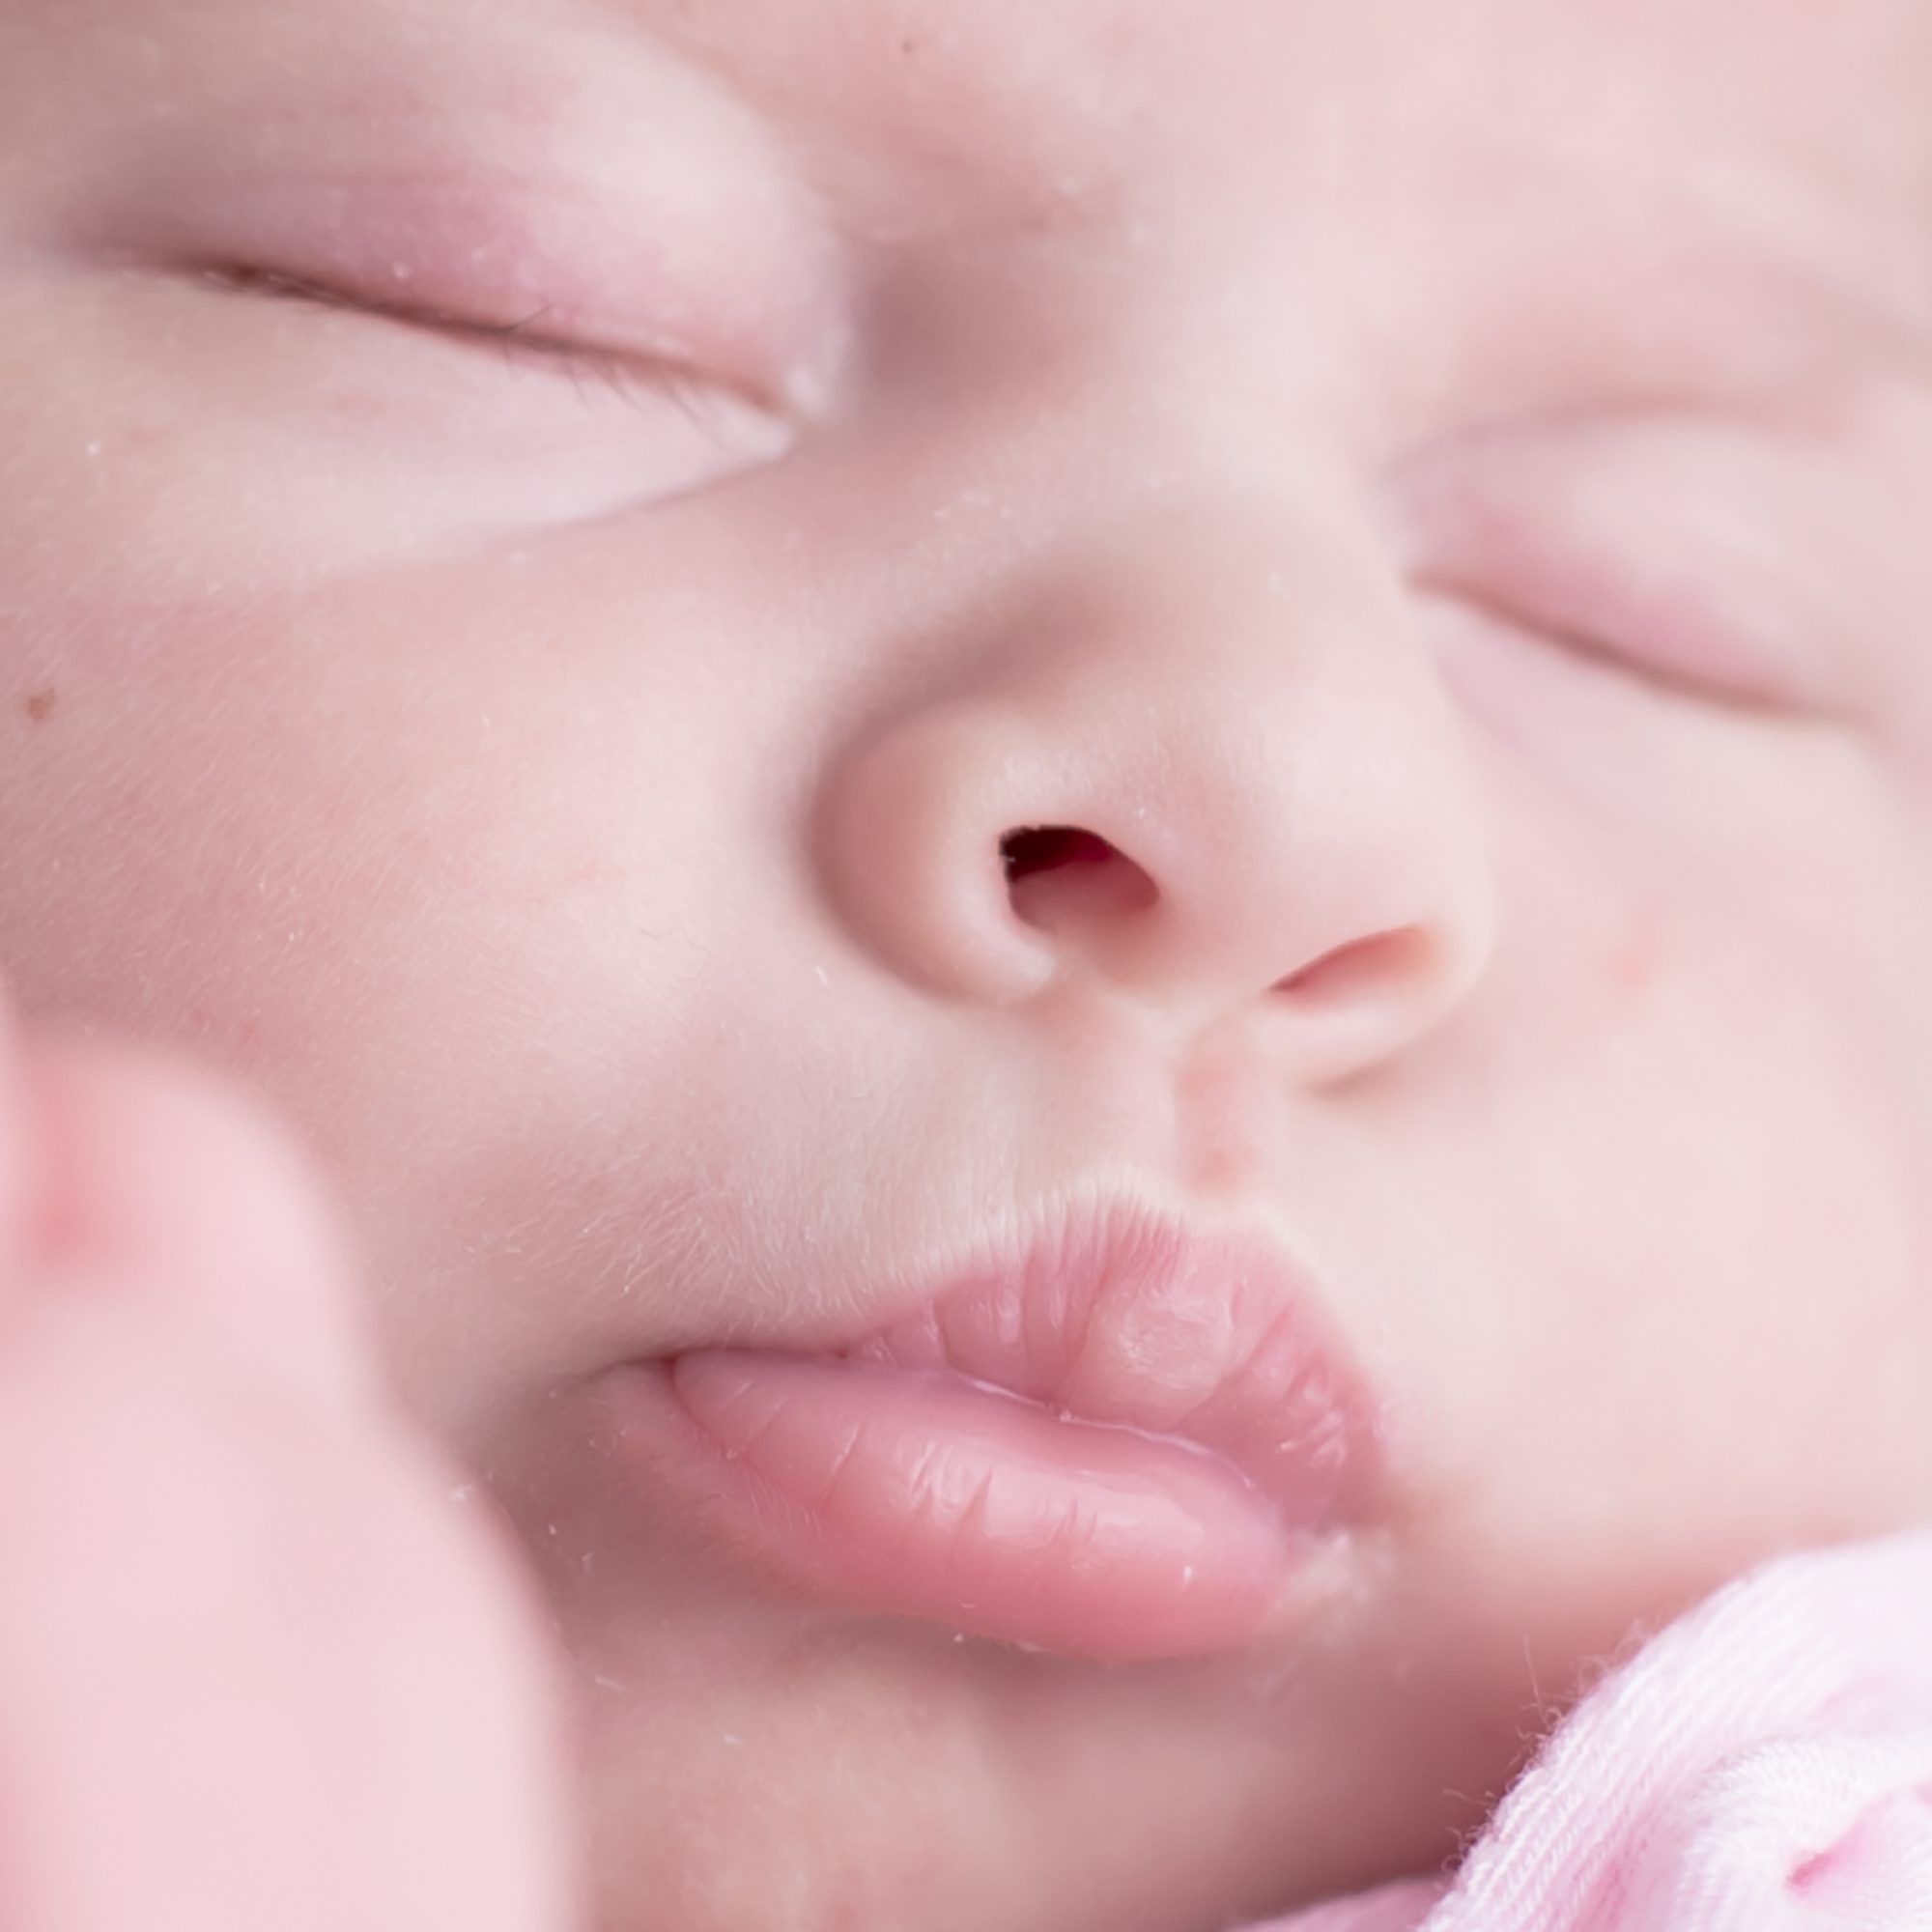 baby fotoshooting newborn fotostudio bilifotos.ch luzern baby foto in rosa zeigt macroaufnahme von mund